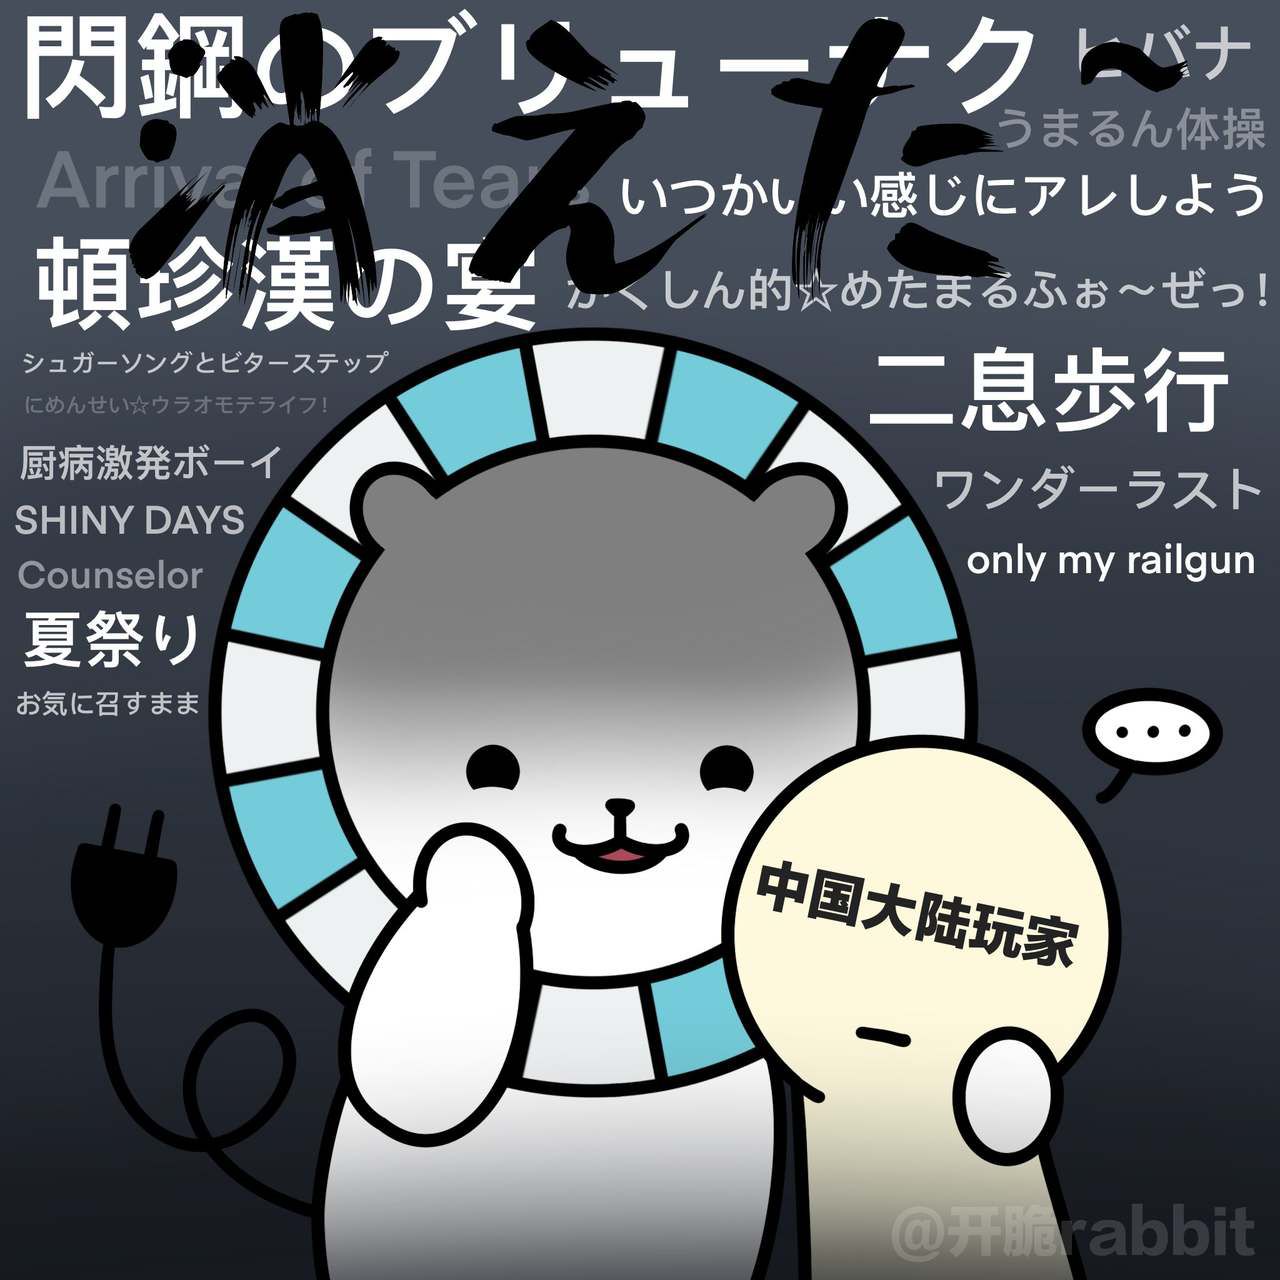 [twitter] kaicuirabbit (56480341) 45